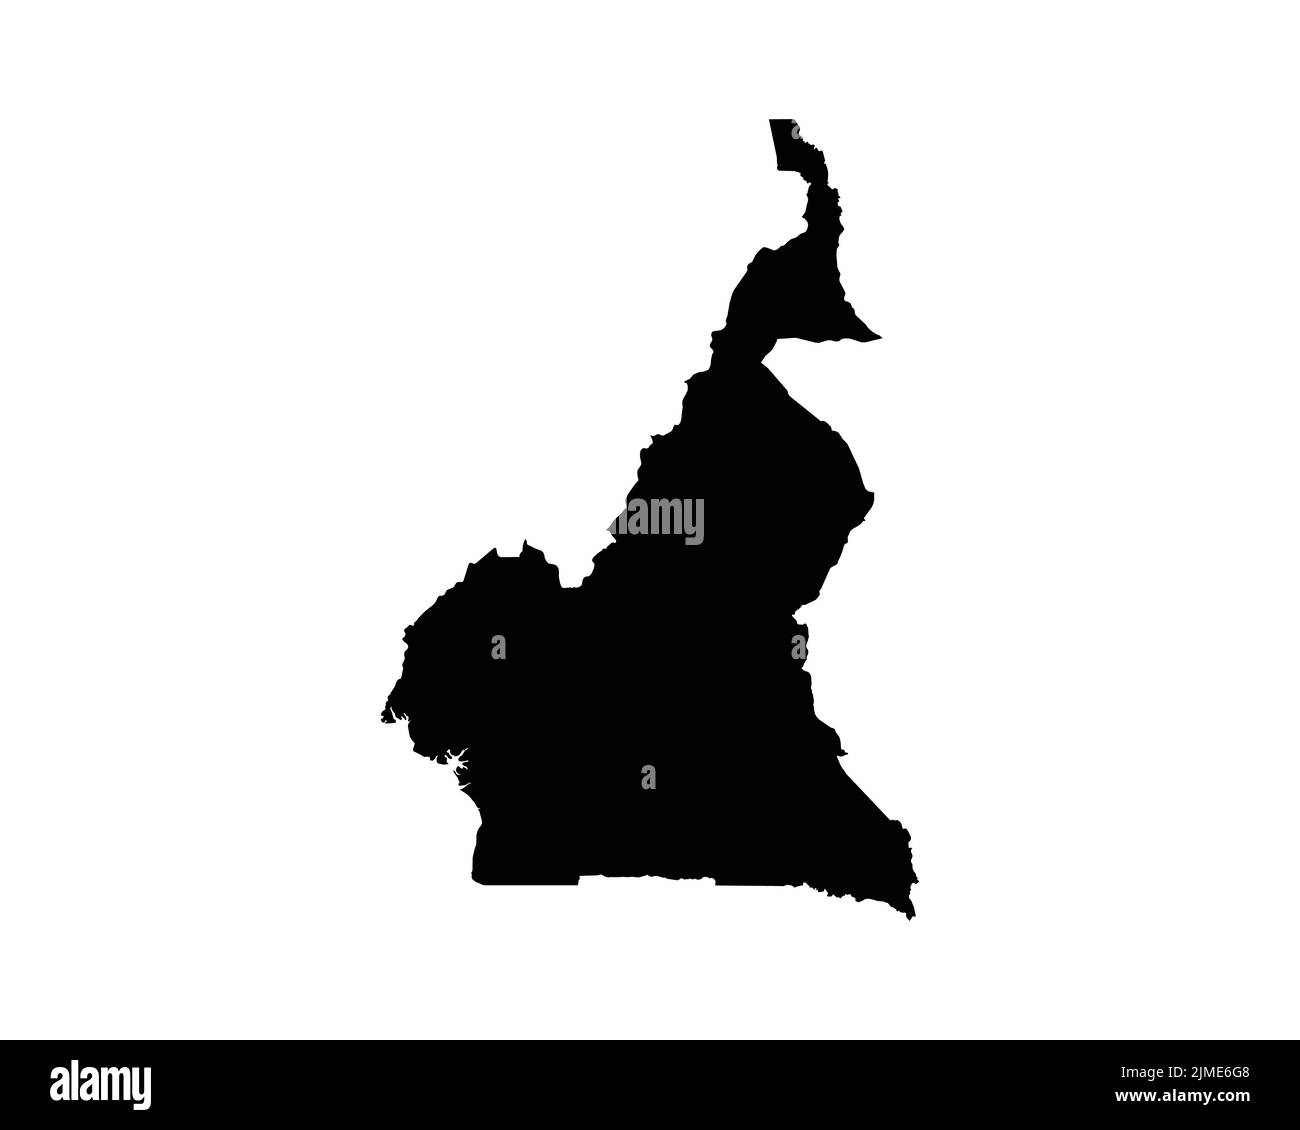 Kamerun-Karte. Kamerunische Landkarte. Schwarz-Weiß nationaler Umriss Geographie Grenze Grenzform Territorium EPS Vektorgrafik Clipart Stock Vektor